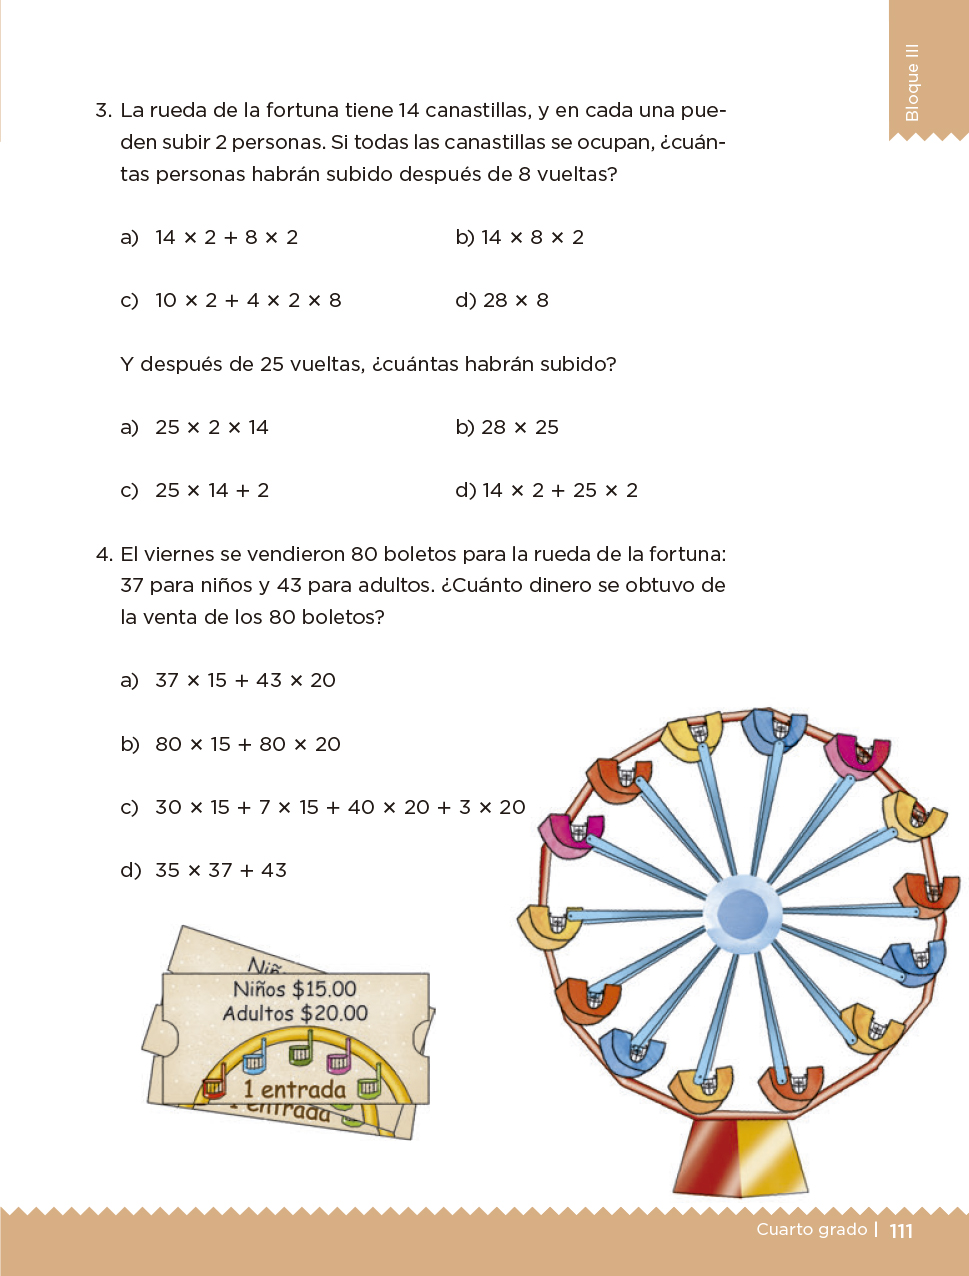 Desafíos Matemáticos Libro para el alumno Cuarto grado 2017-2018 - Página 111 - Libros de Texto ...